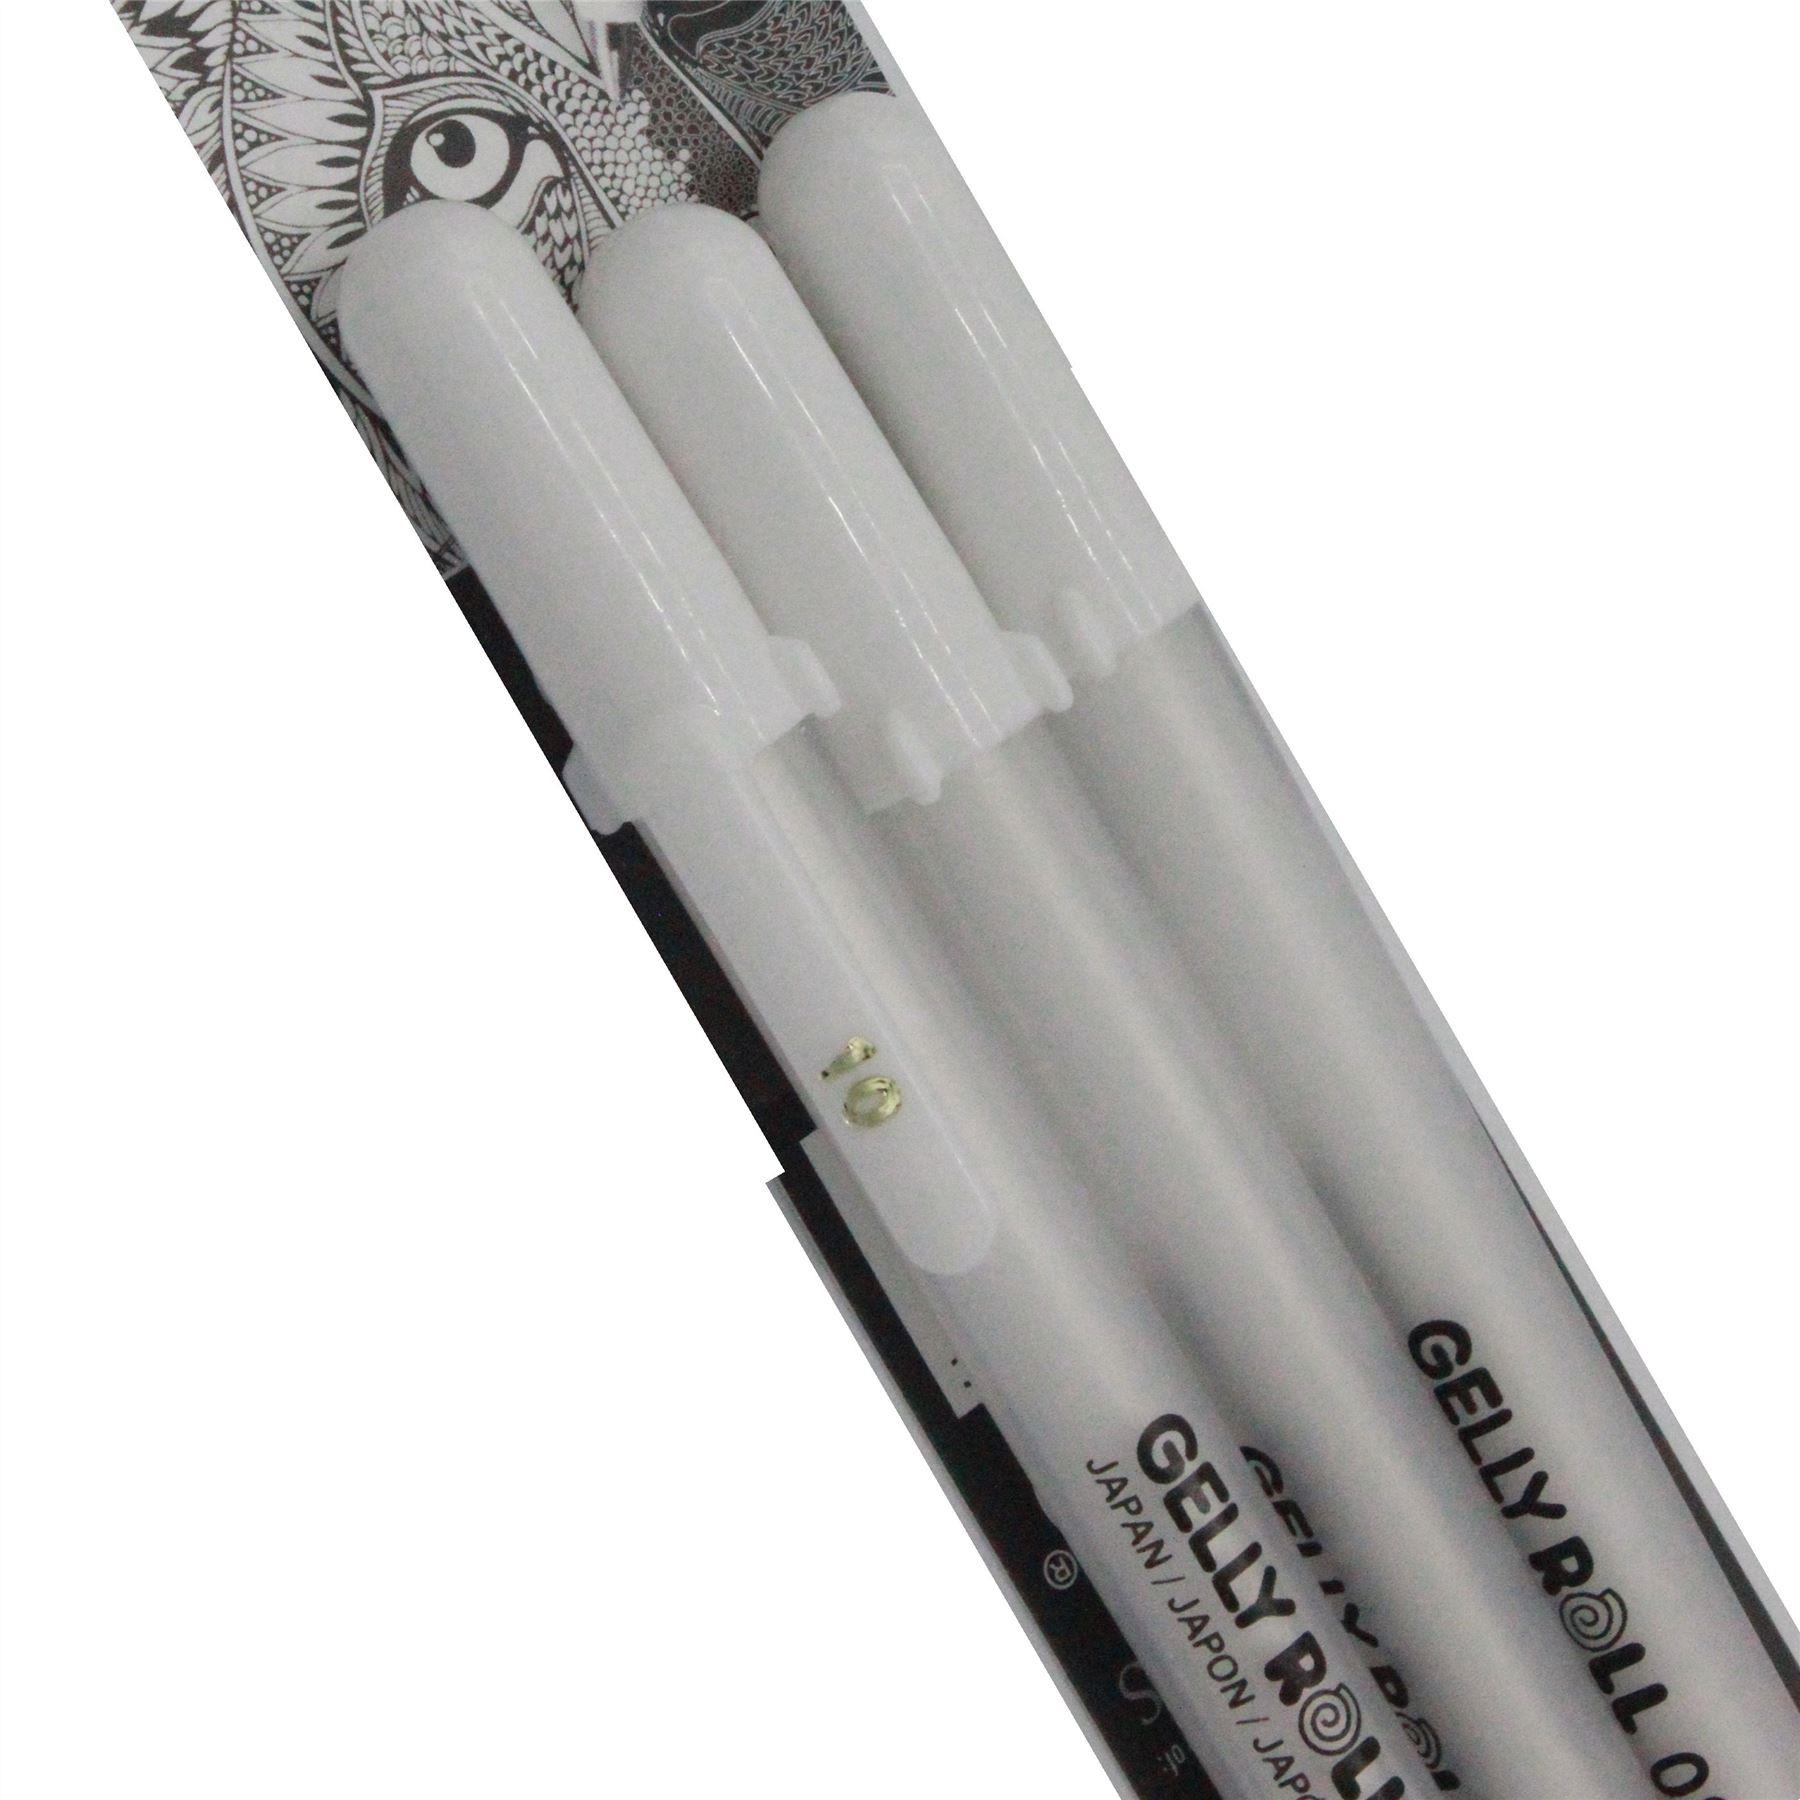 sakura bright white gelly roll pen set